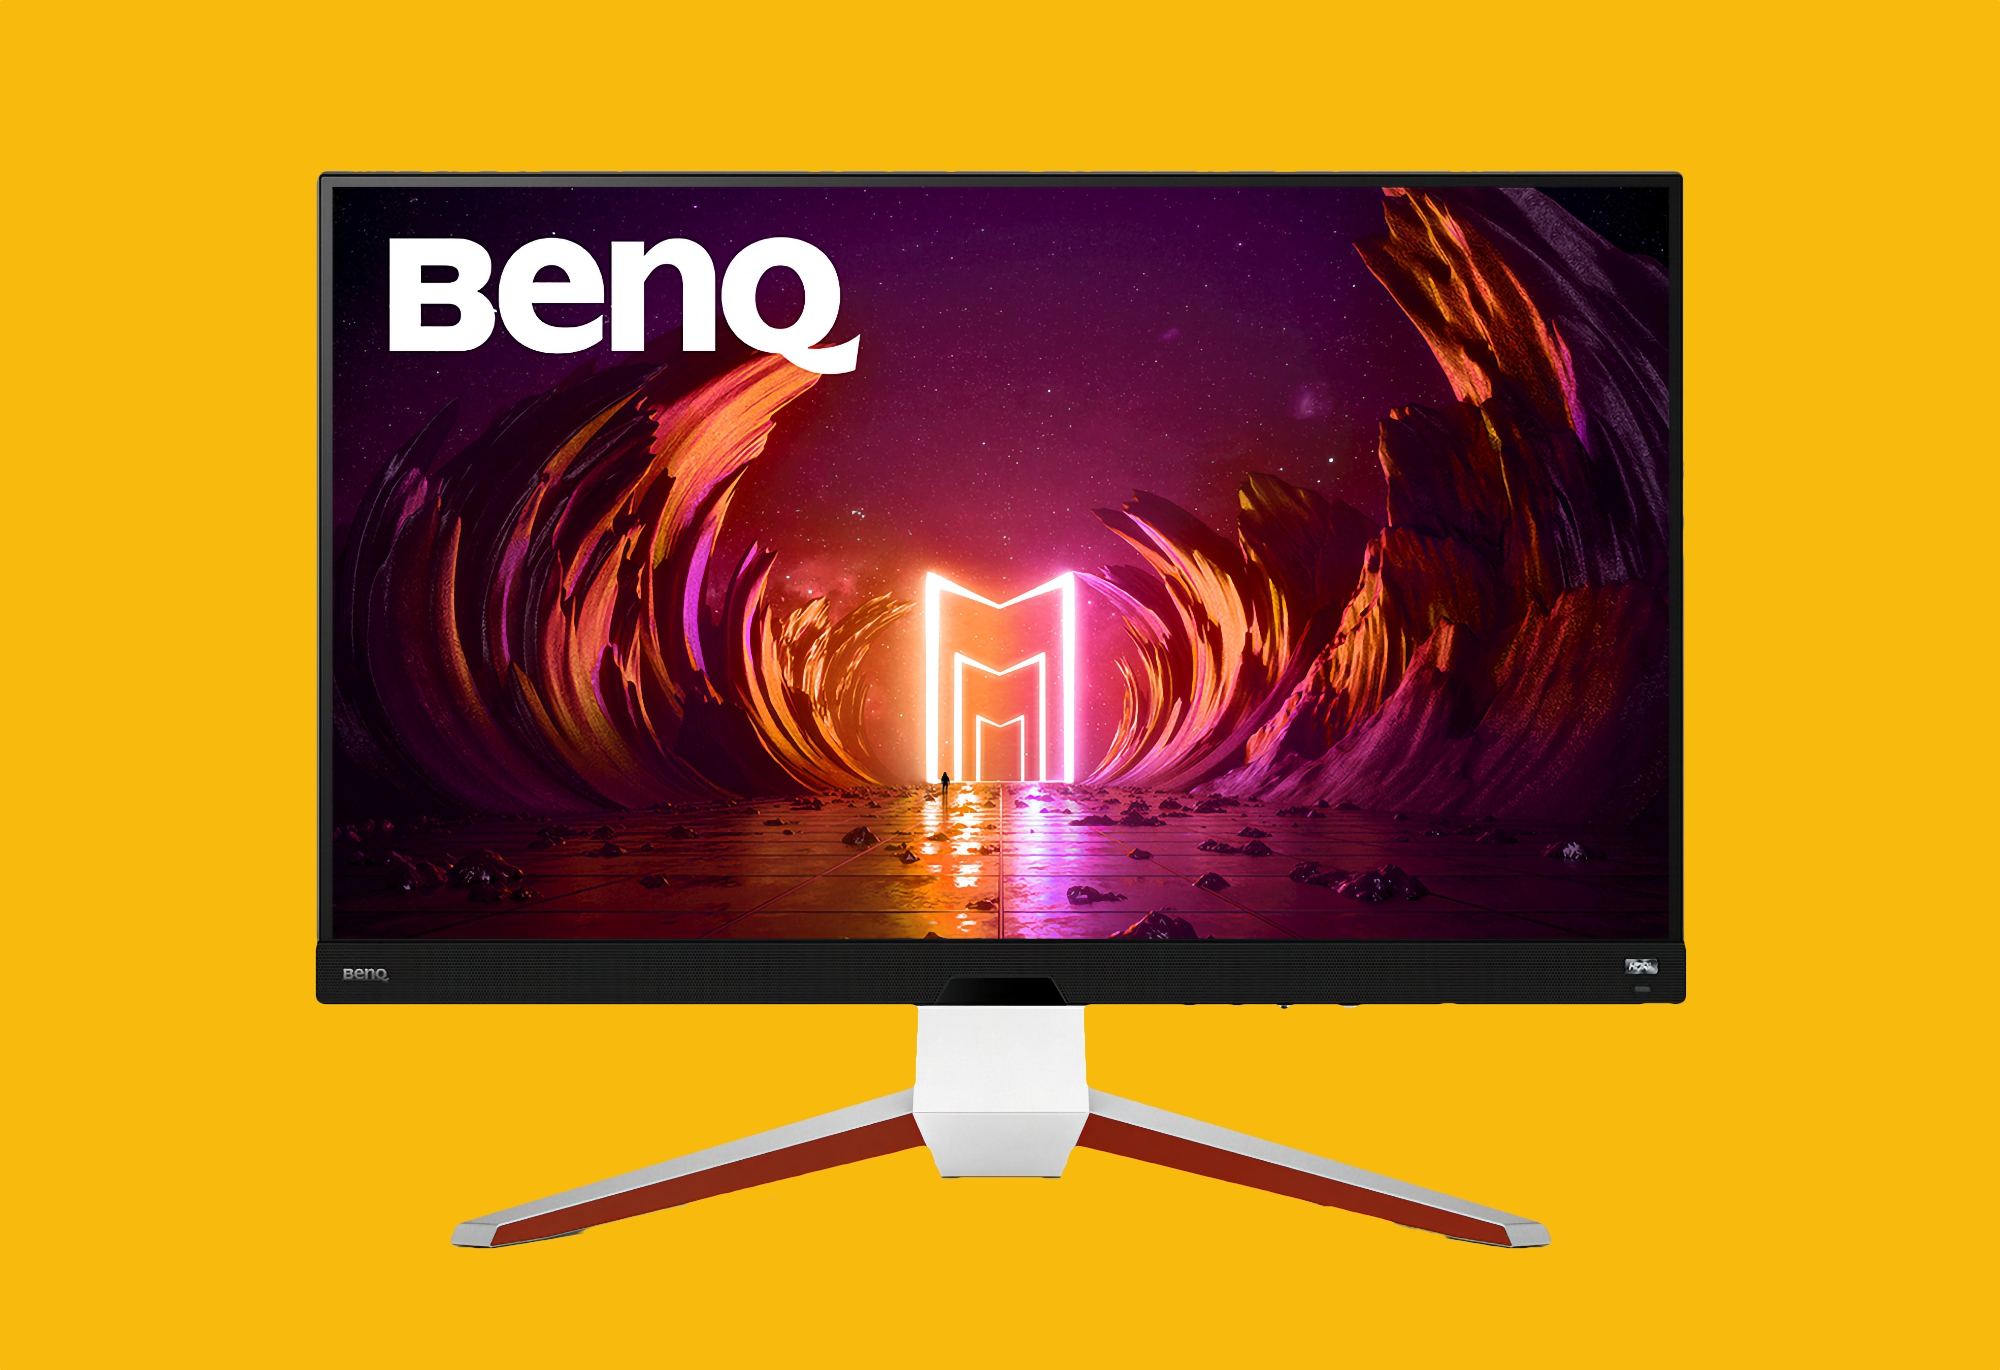 BenQ Mobiuz EX3210U 32-calowy monitor do gier 4K 144 Hz z technologią AMD FreeSync Premium Pro